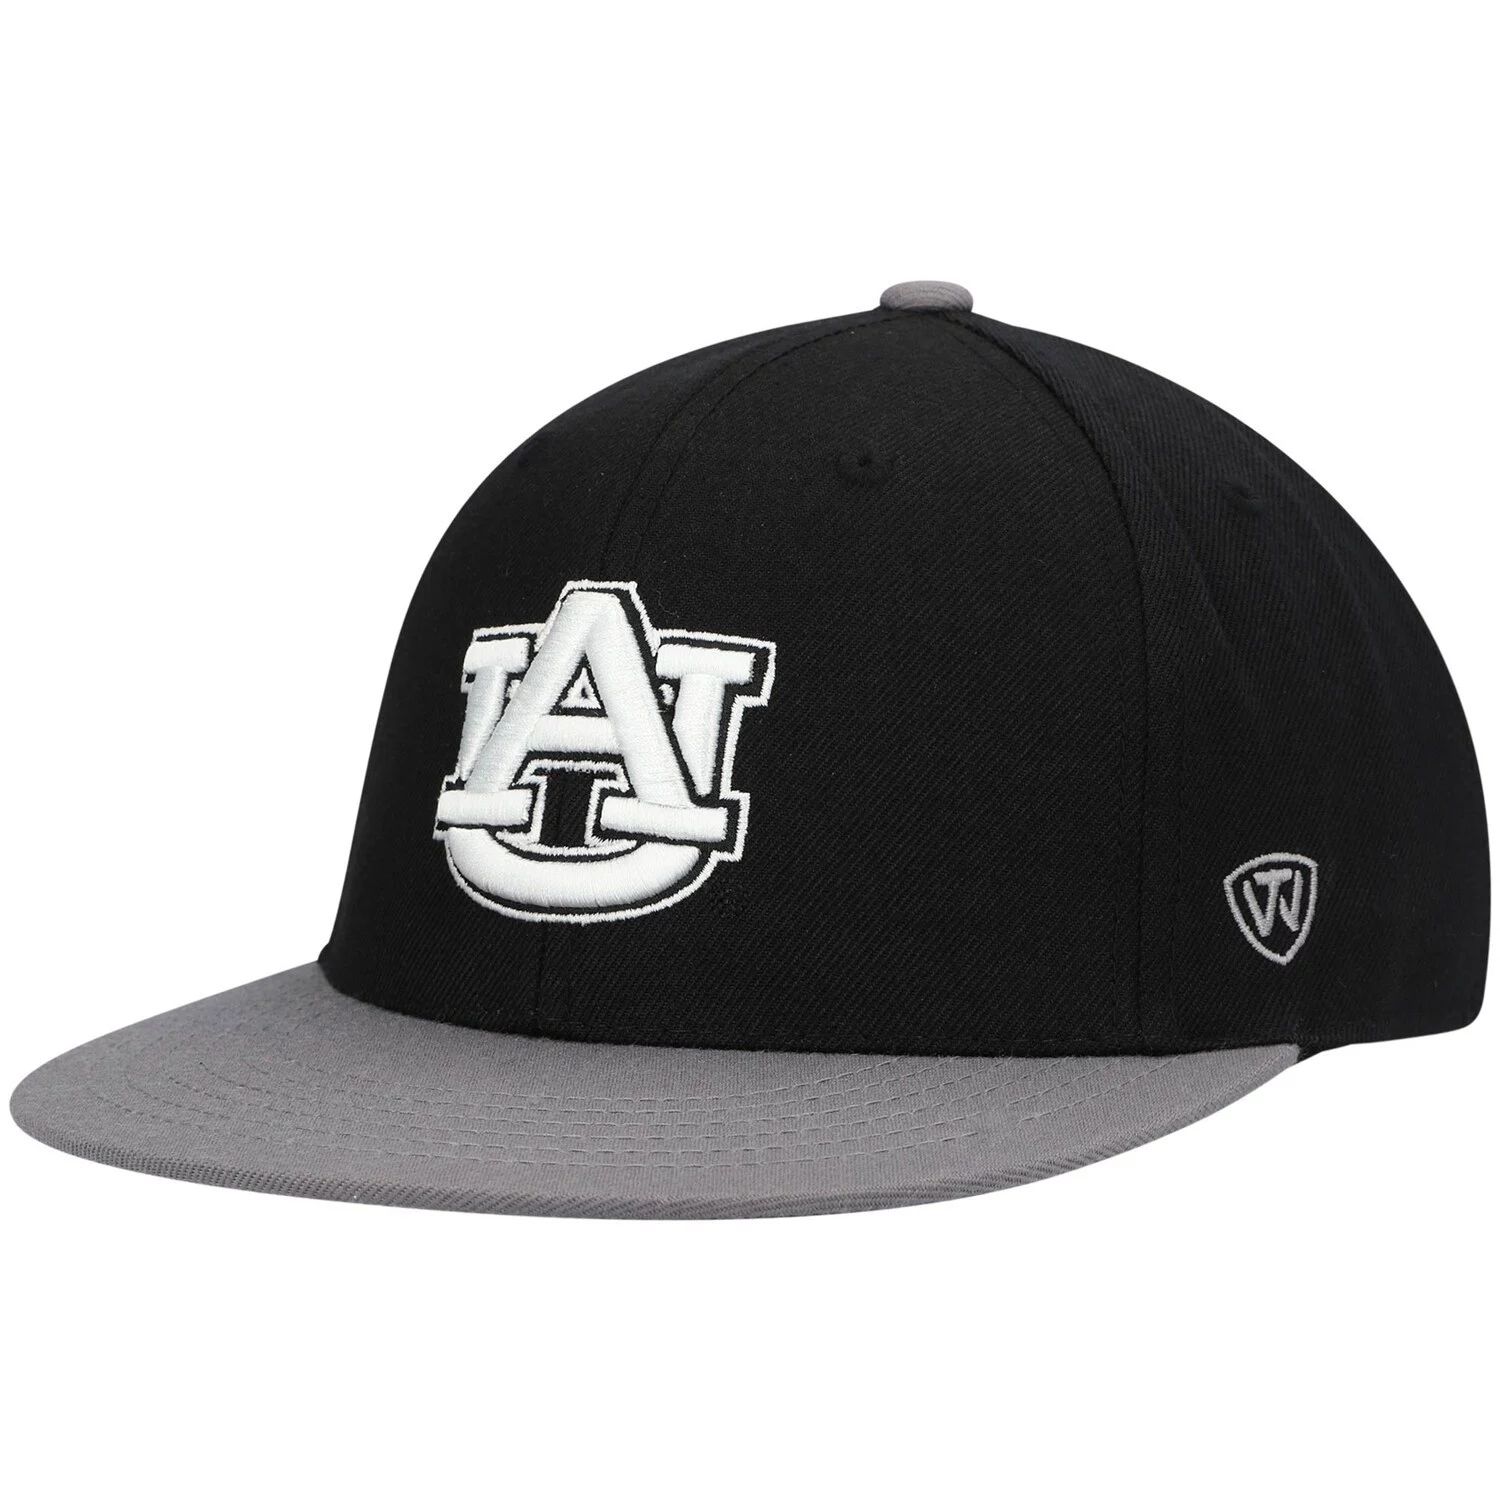 Мужская двухцветная приталенная шляпа Top of the World черного/серого цвета Auburn Tigers Team Color